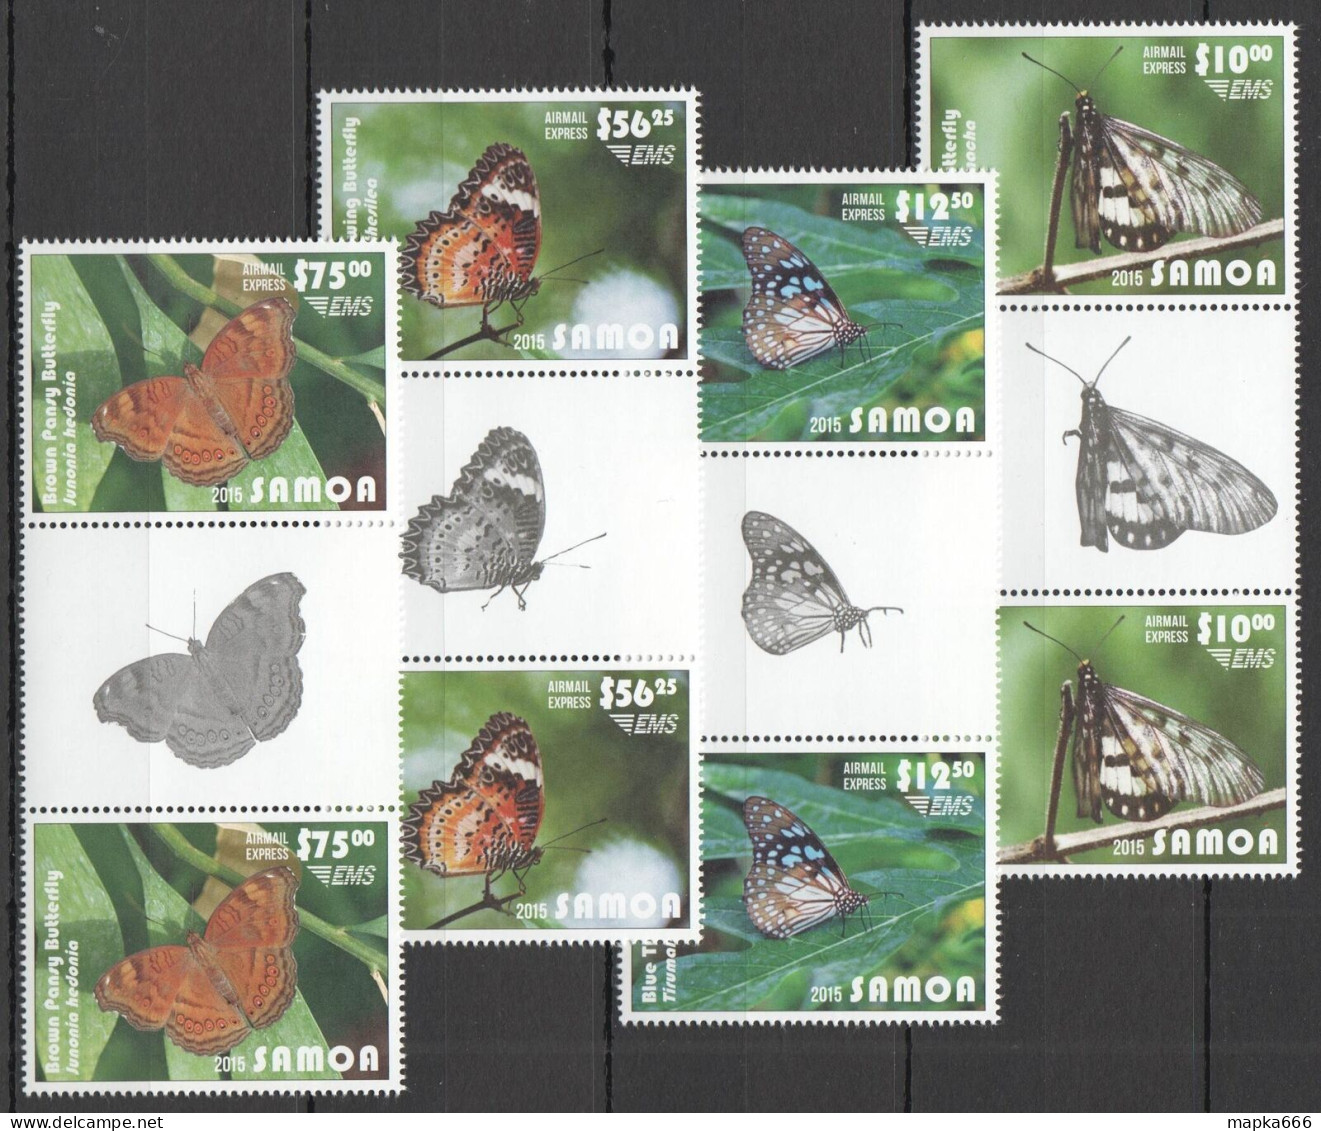 B1499 2015 Samoa Flora Fauna Butterflies Michel 240 Euro Gutter 2Set Mnh - Mariposas